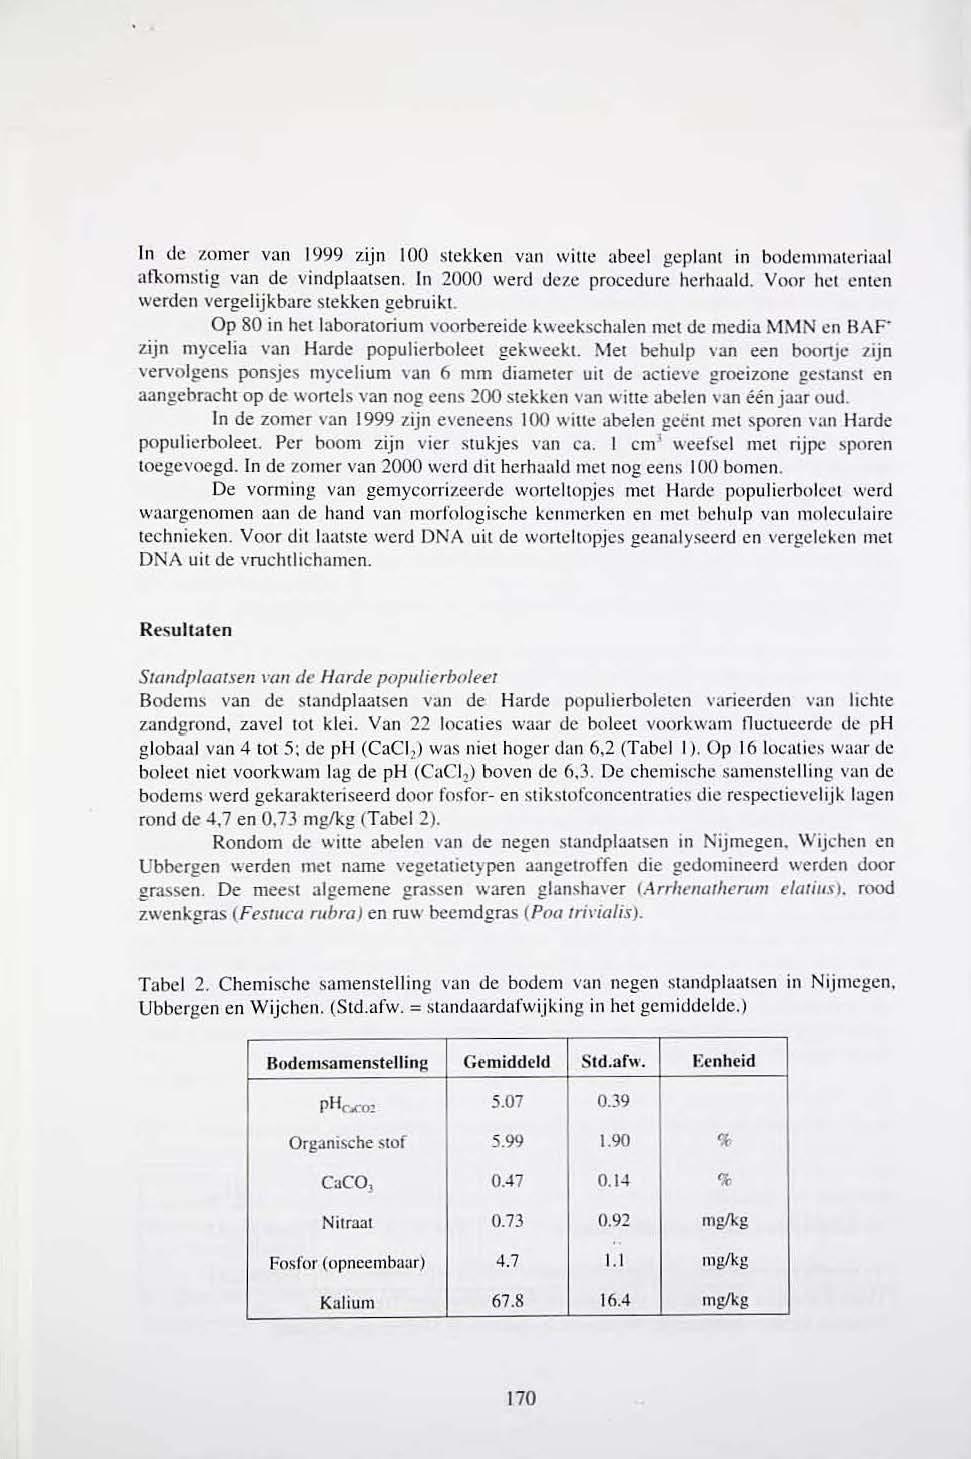 In de zomer van 1999 zijn 100 stekken van wille abeel gcplanl in bodcrnm:lleriaul afkomstig van de vindplaatsen. ln 2000 werd deze procedure hcrhanld. Voor 111.